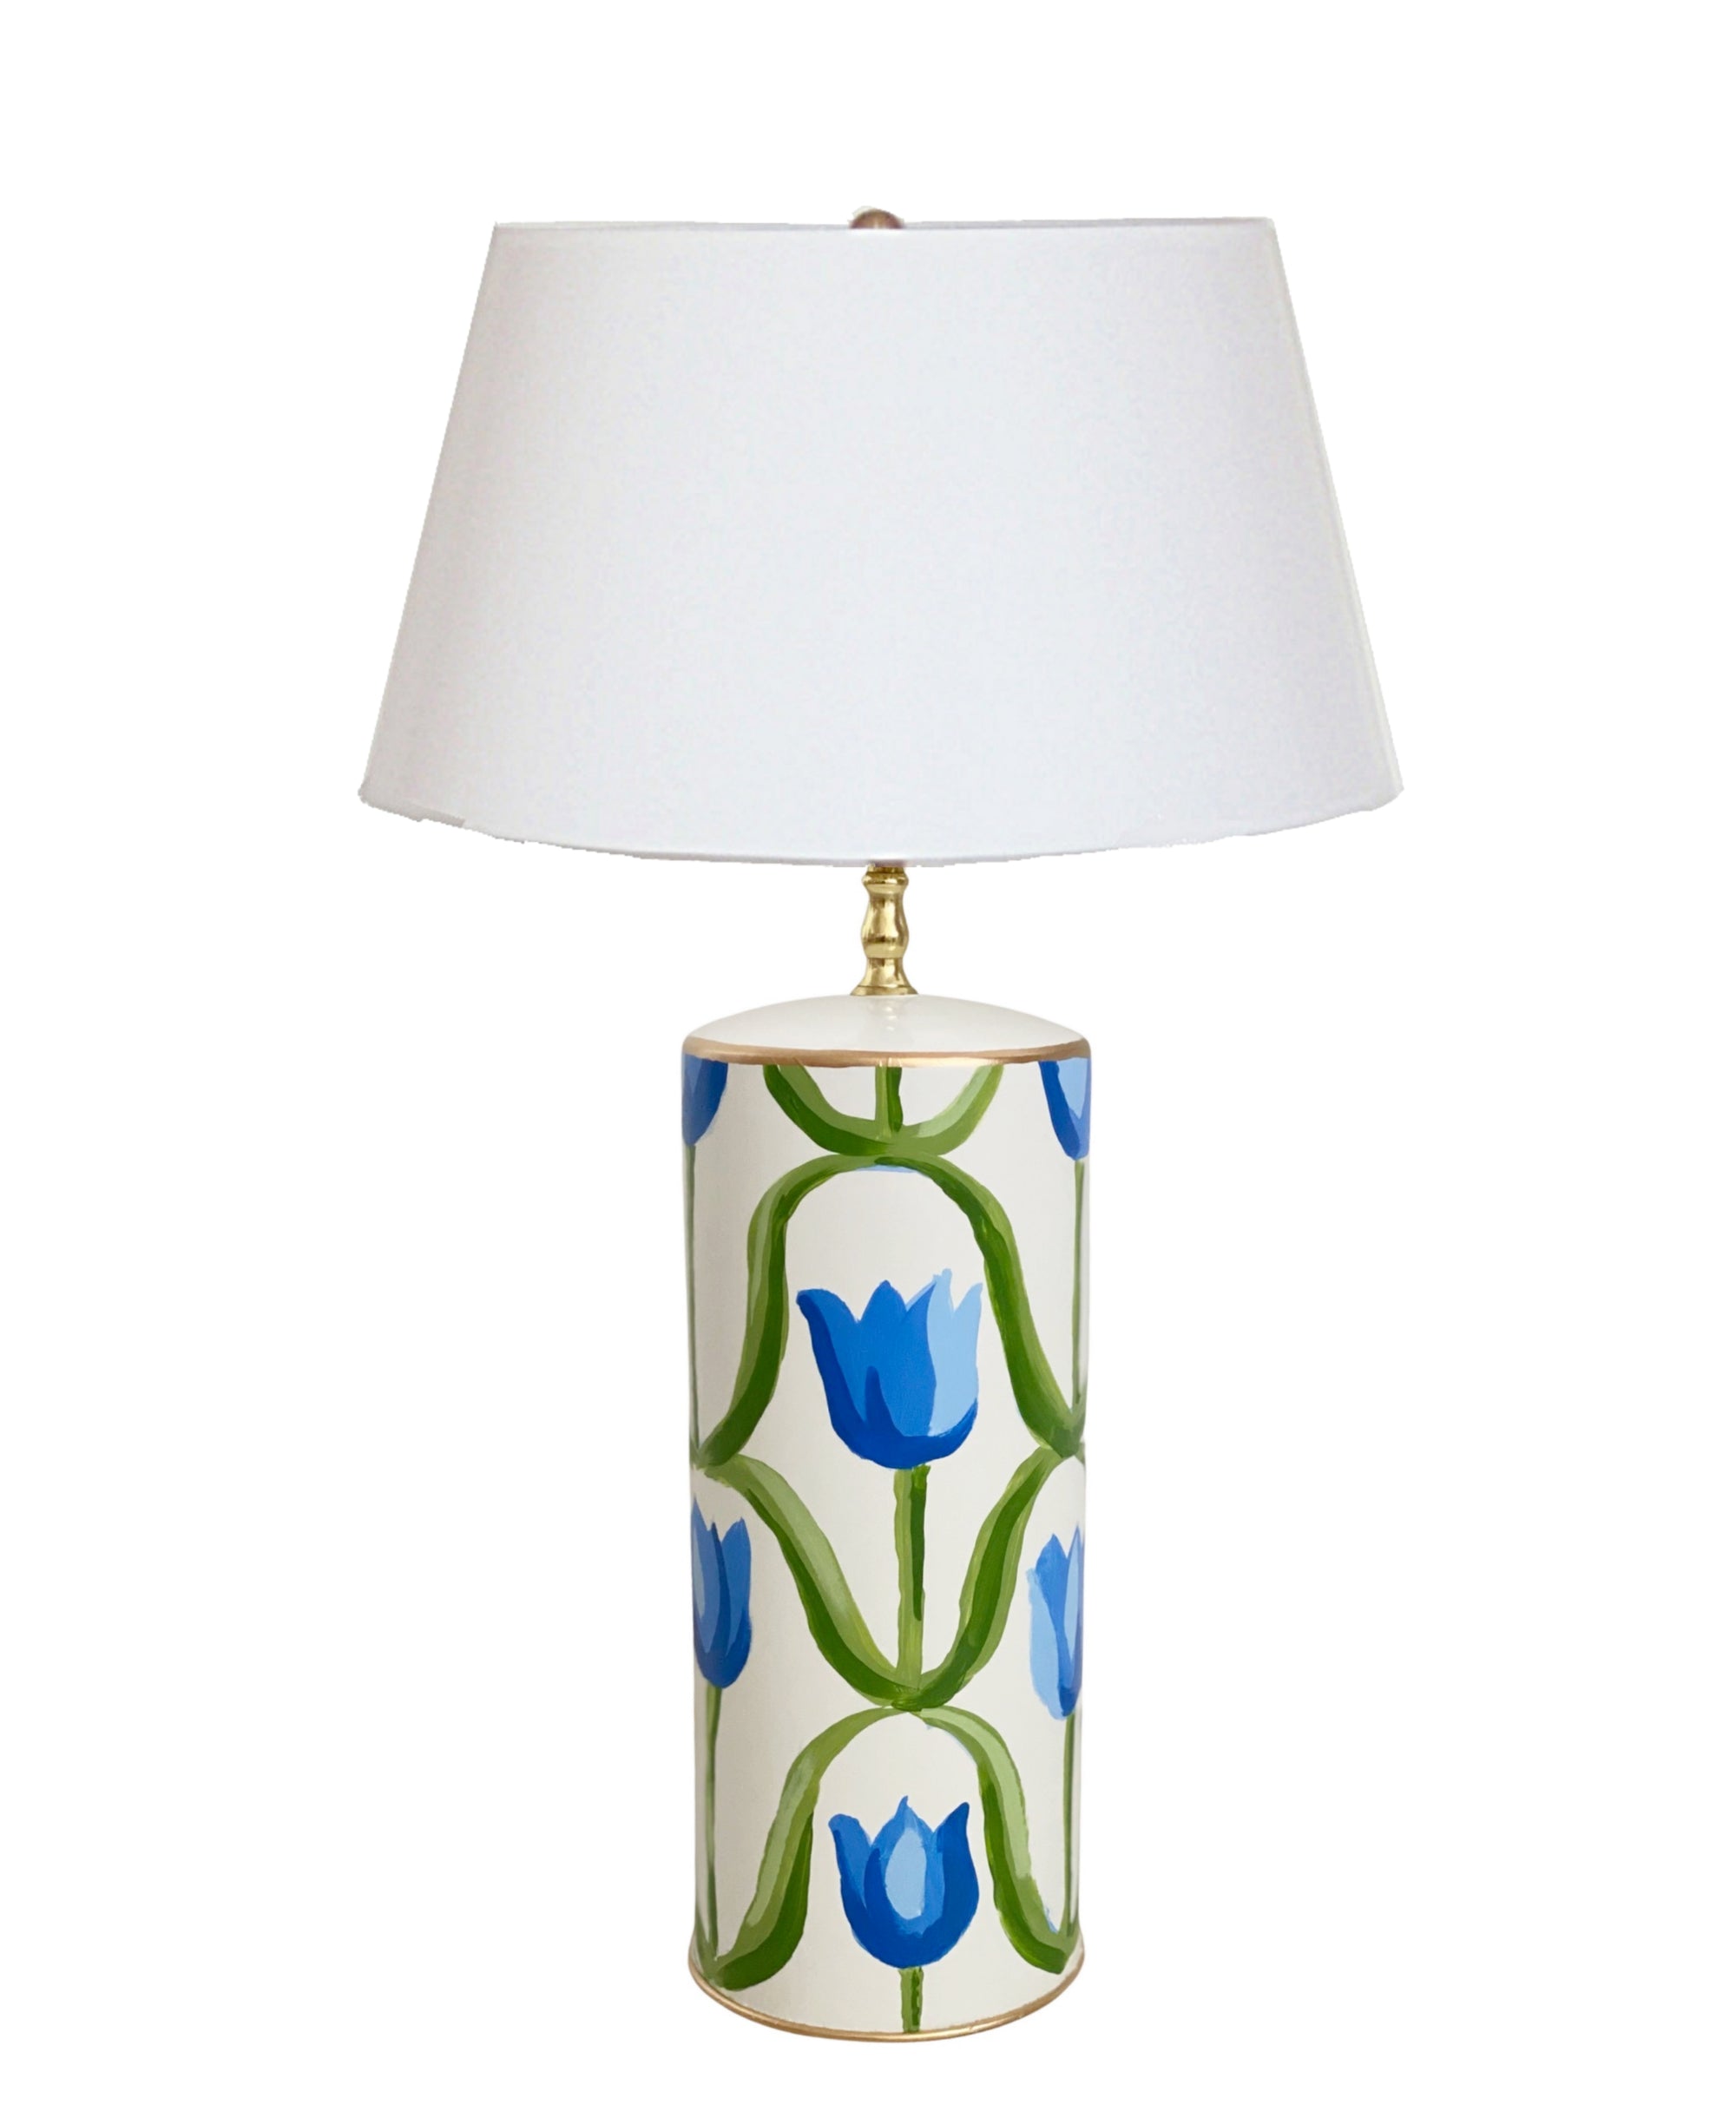 Dana Gibson Tulip Lamp in White